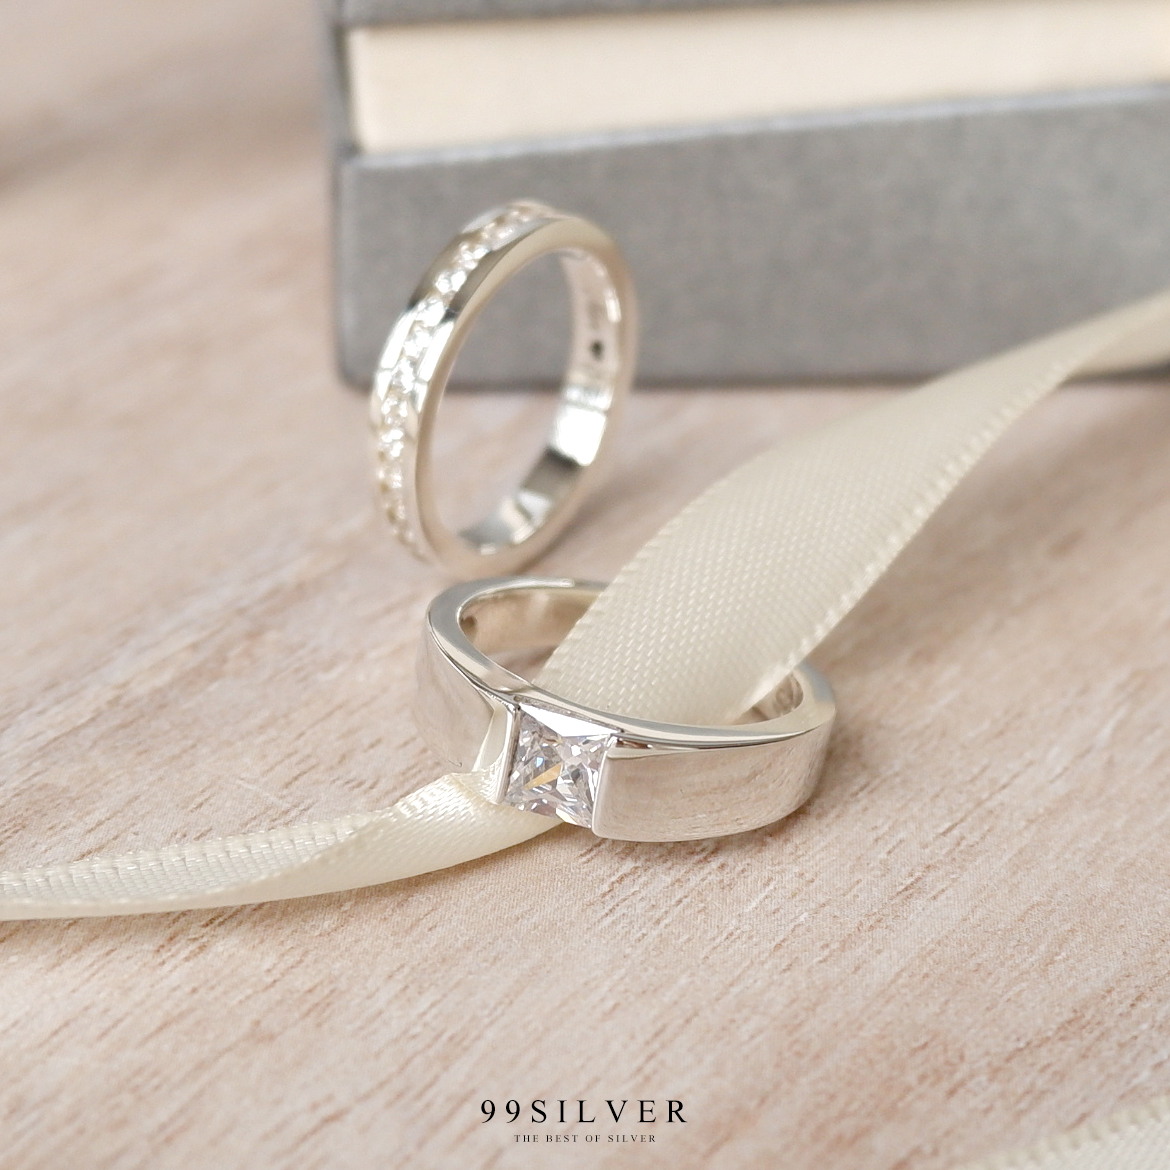 แหวนคู่รัก เพชรเม็ดเหลี่ยม Diamond Cut และเพชรรอบวง 3.5 มิลลิเมตร